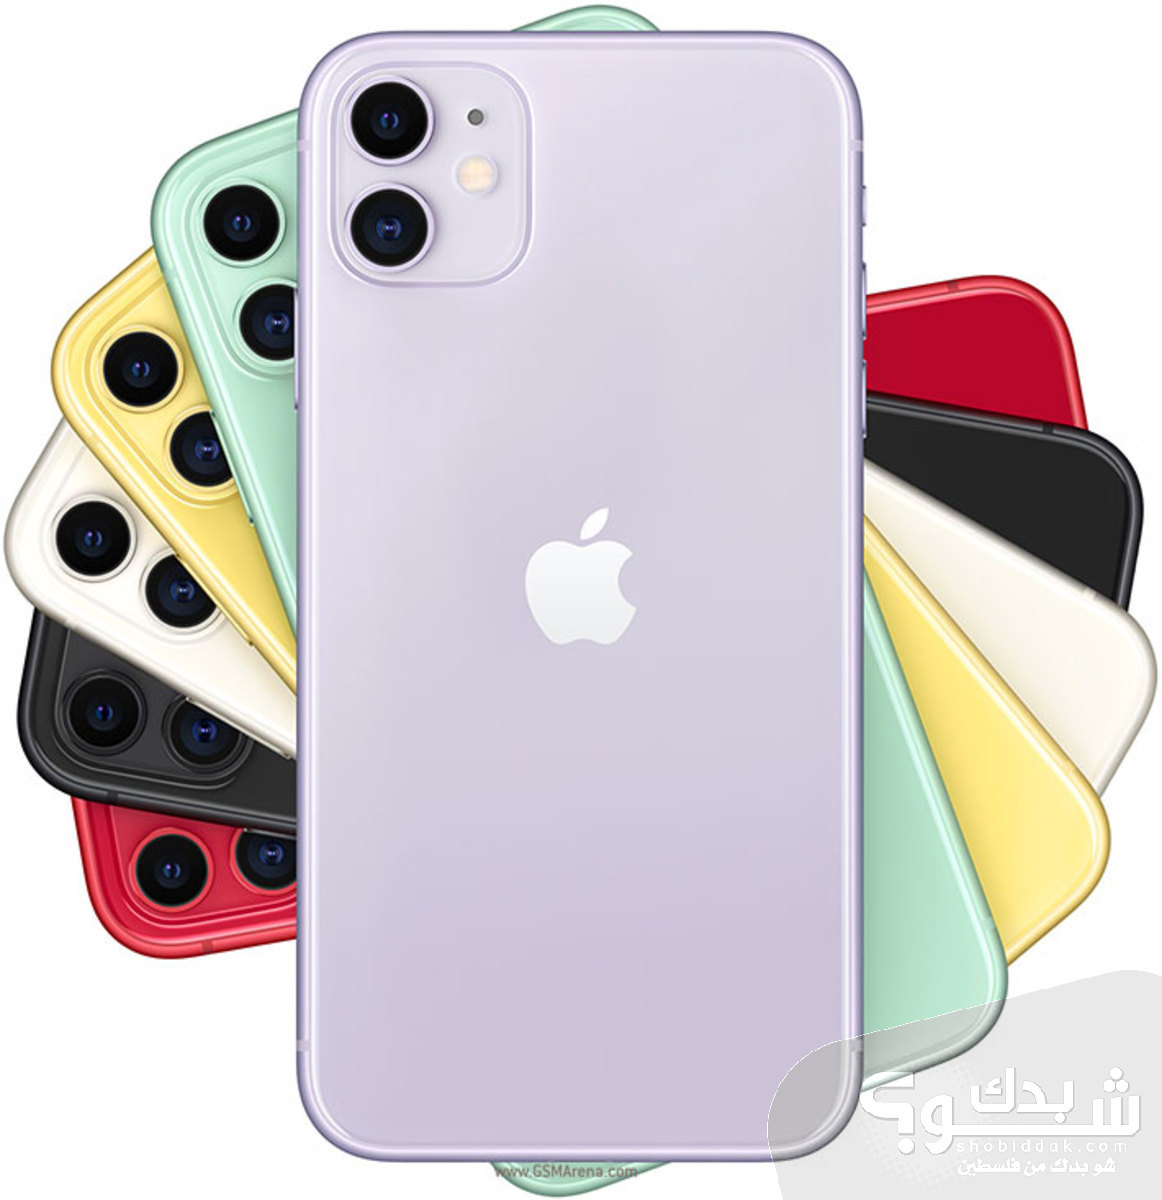 Apple ايفون اكس اس ماكس 256 جيجا - جديد | شو بدك من فلسطين؟